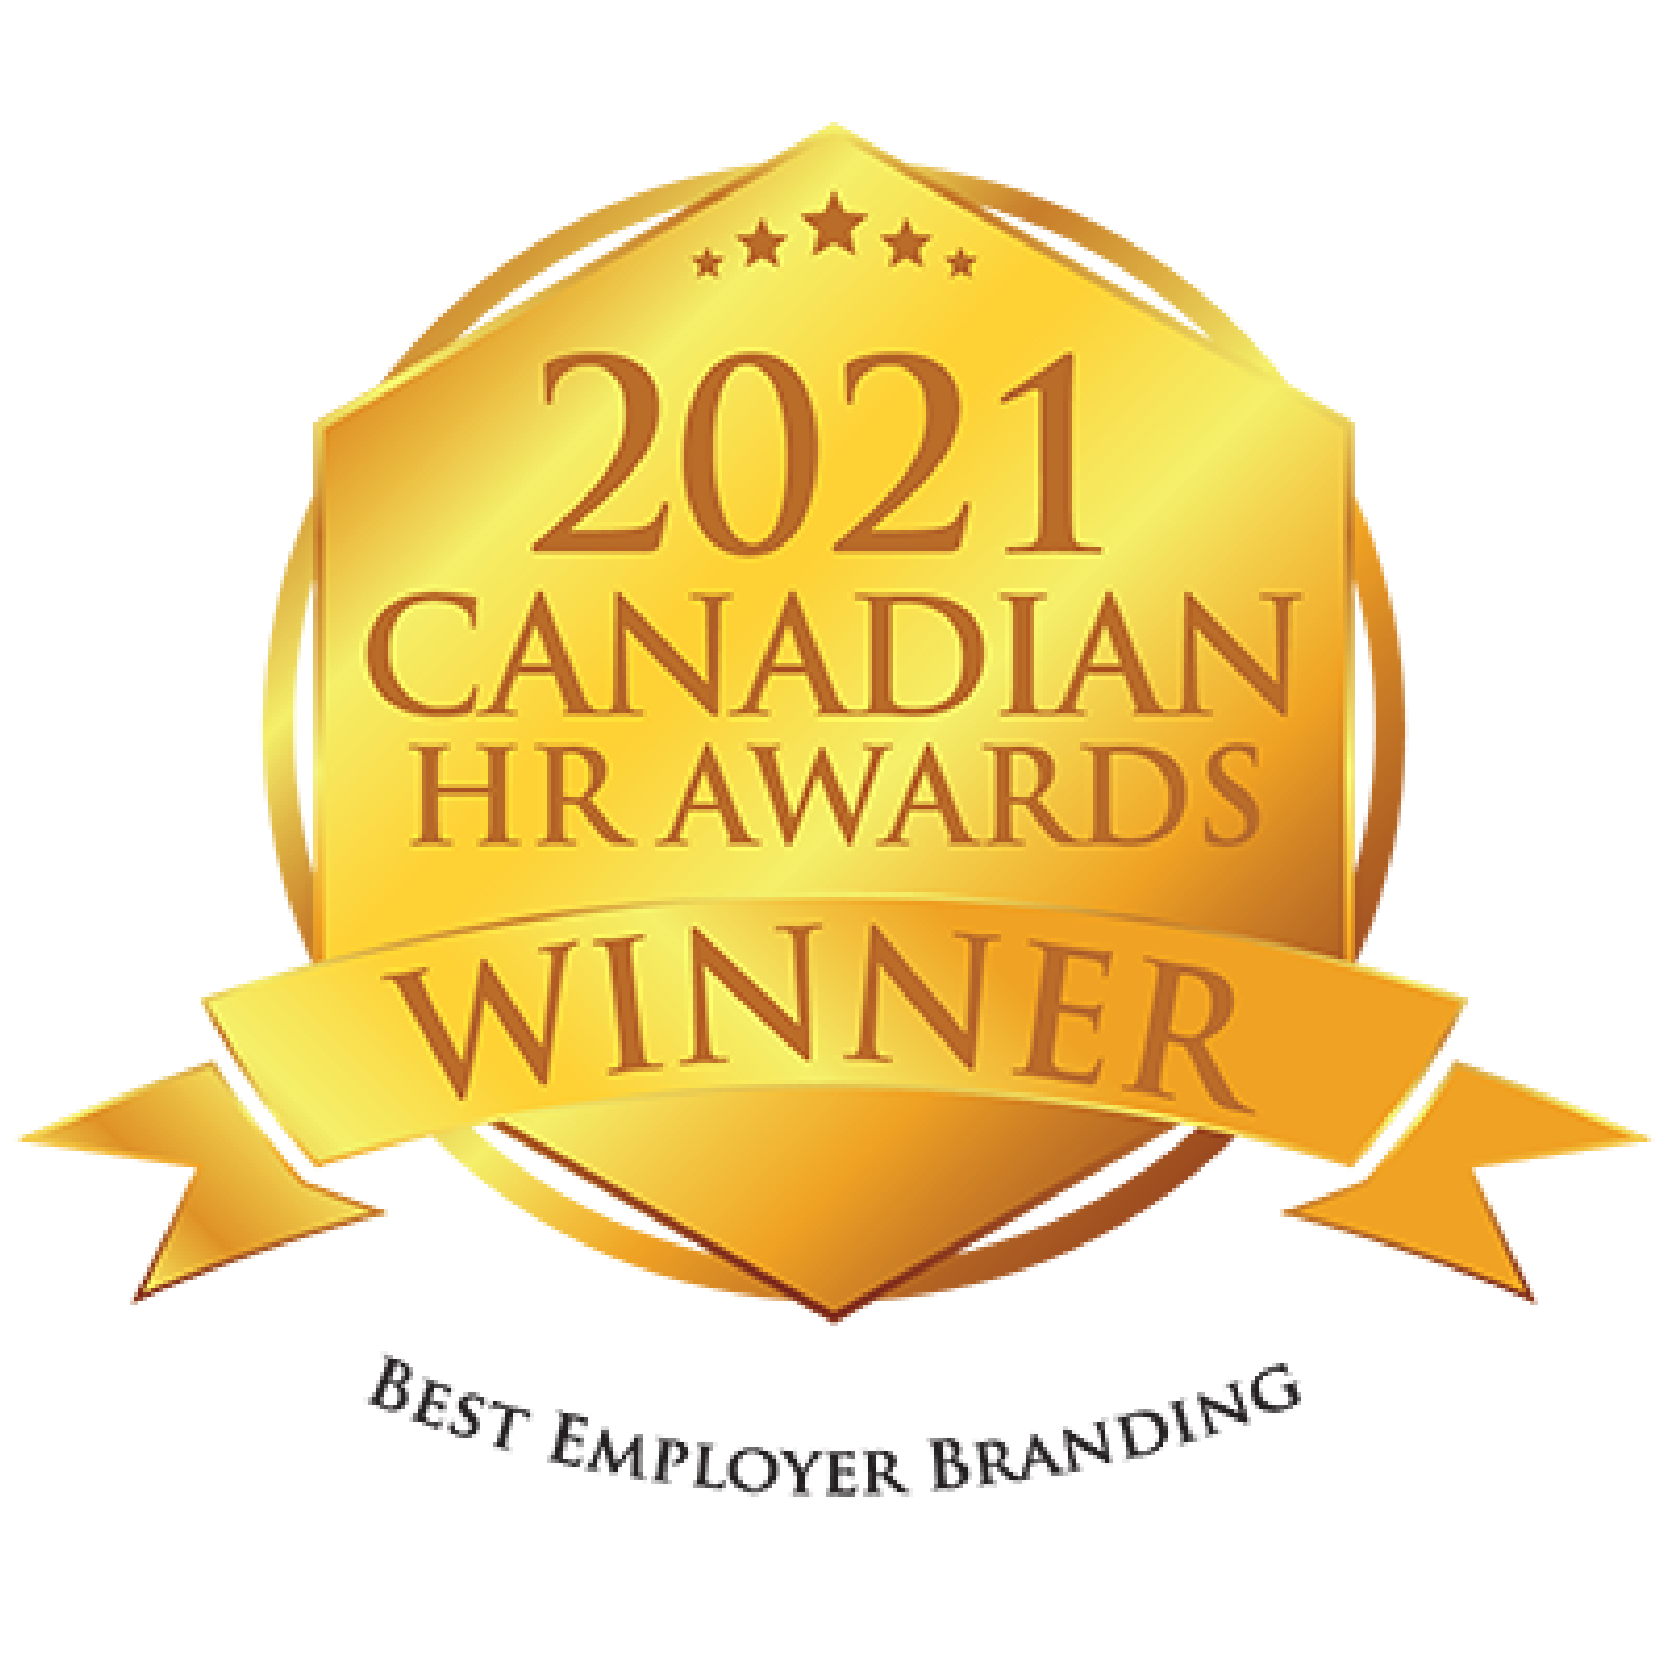 2021 Canadian HR Awards Winner. Best Employer Branding.